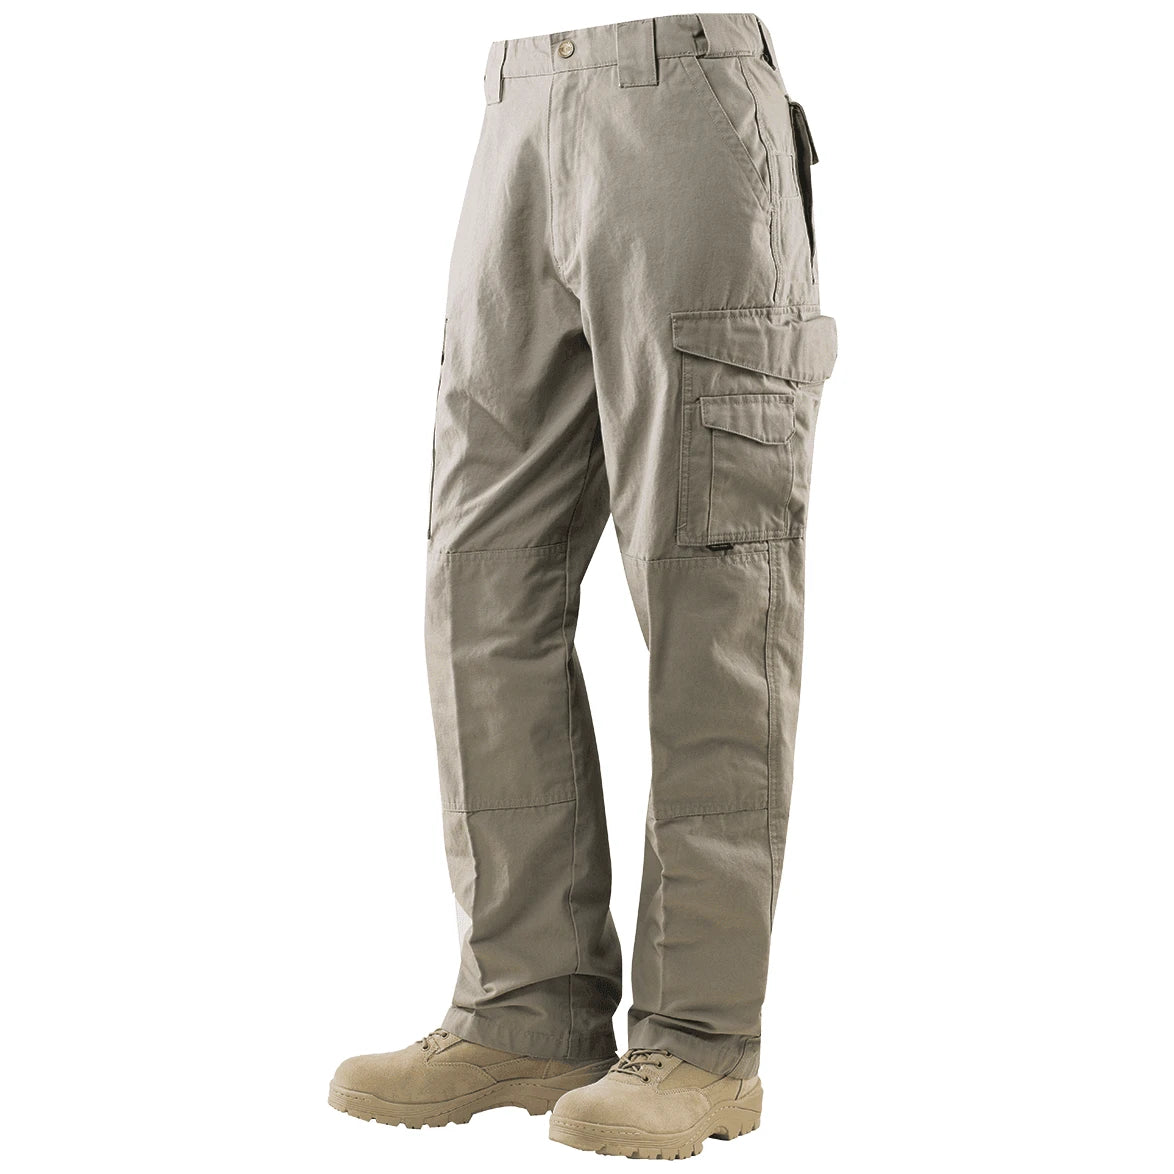 24-7 Tactical Pants: Khaki - POCO R/S